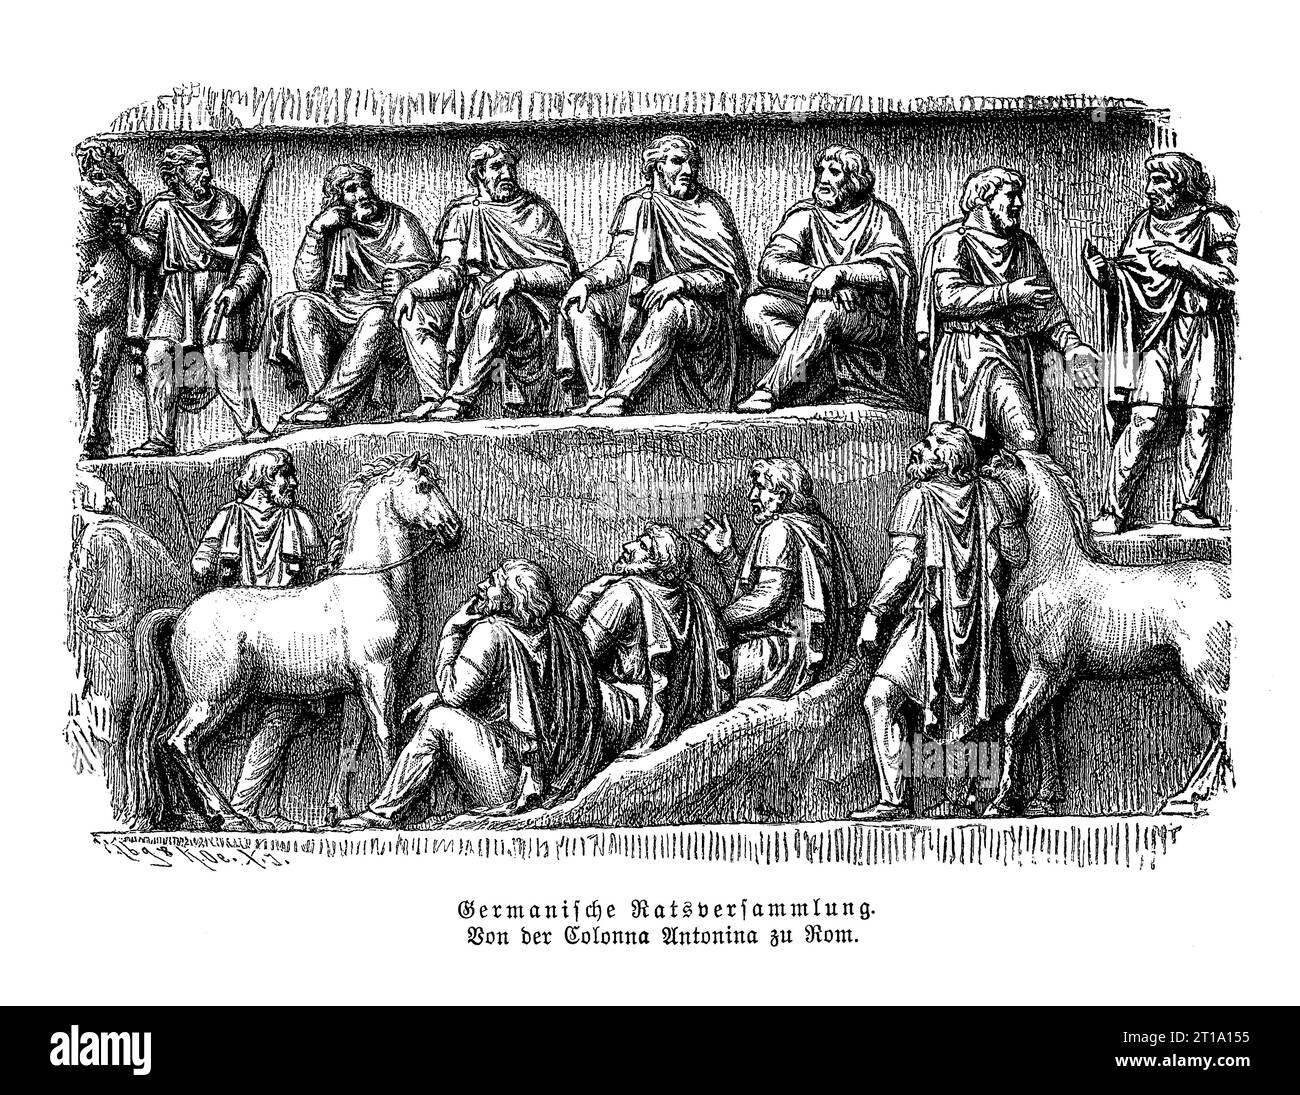 Riunione del consiglio germanico, bassorilievo sulla colonna Antonina a Roma eretto in onore di Marco Aurelio Antonino imperatore Foto Stock